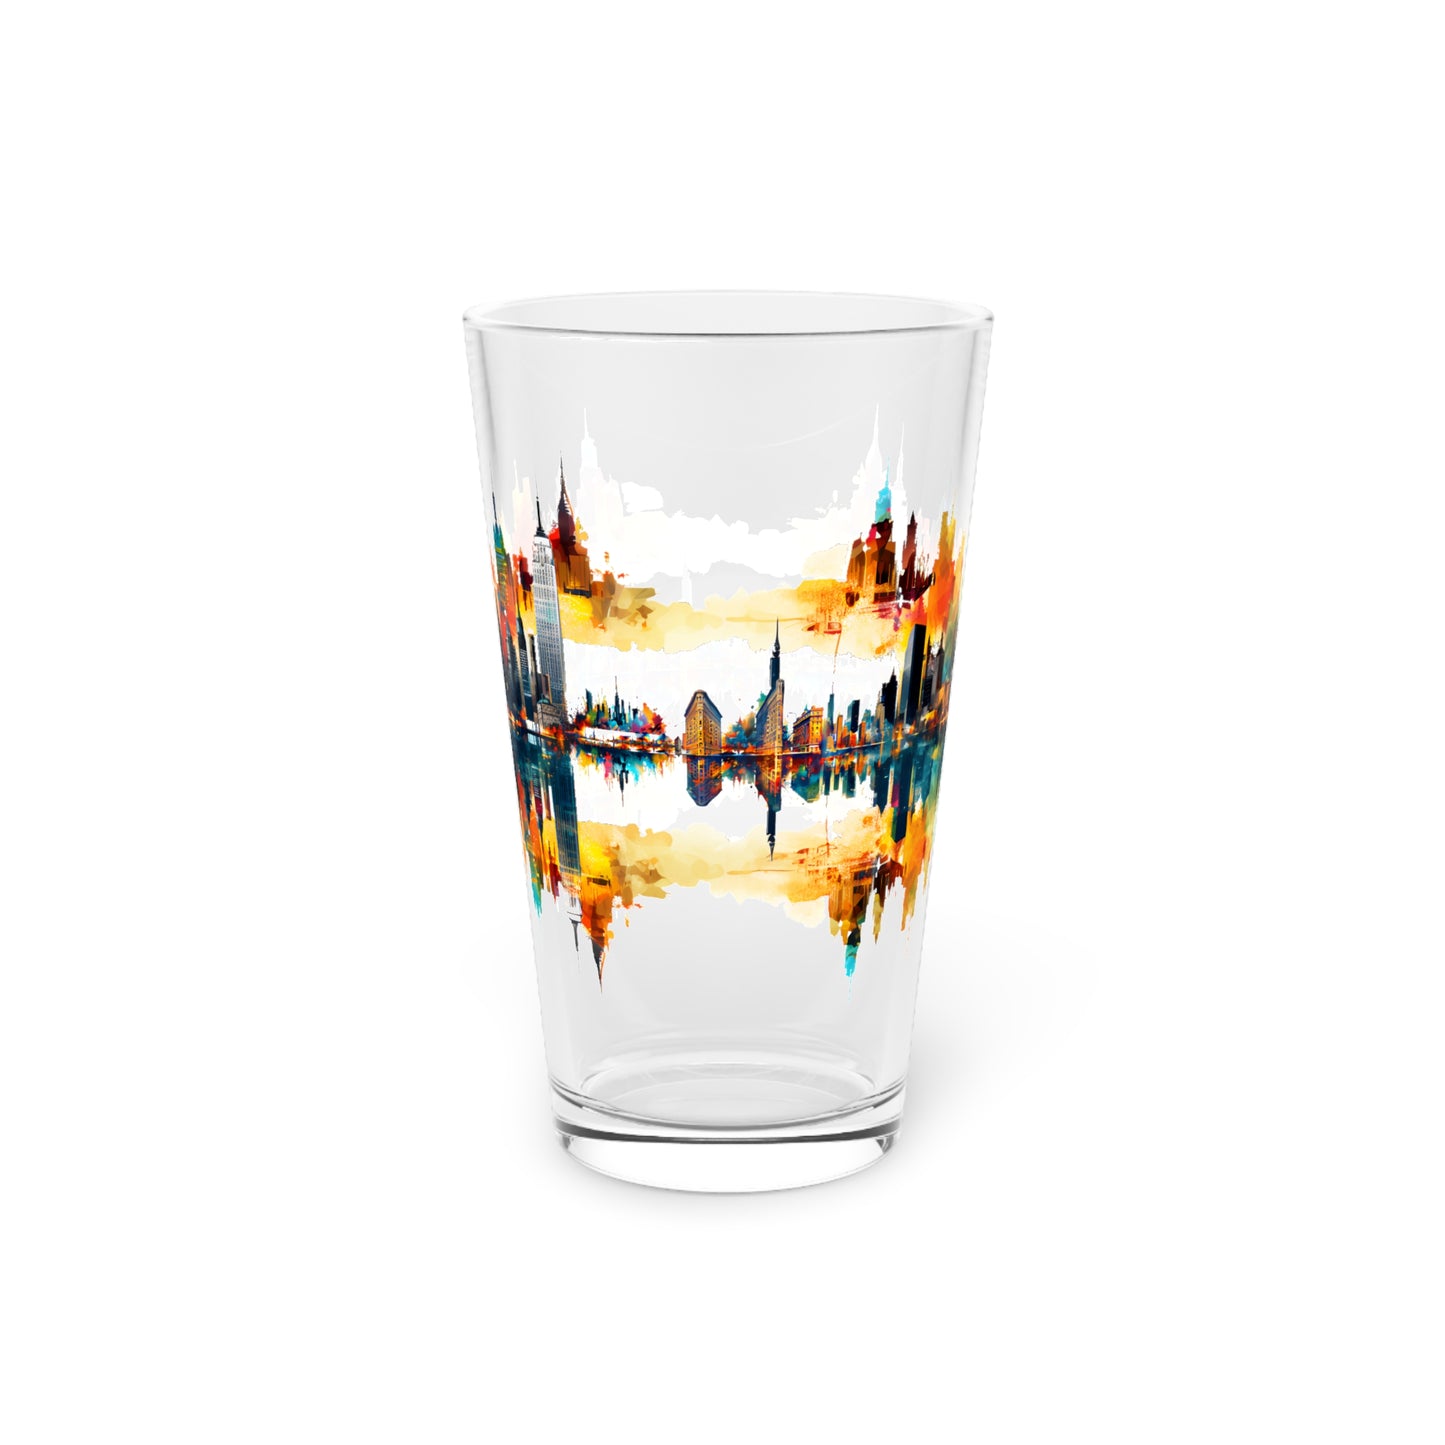 Stunning NYC Skyline Artwork - 16oz Glass - Stashbox New York Design